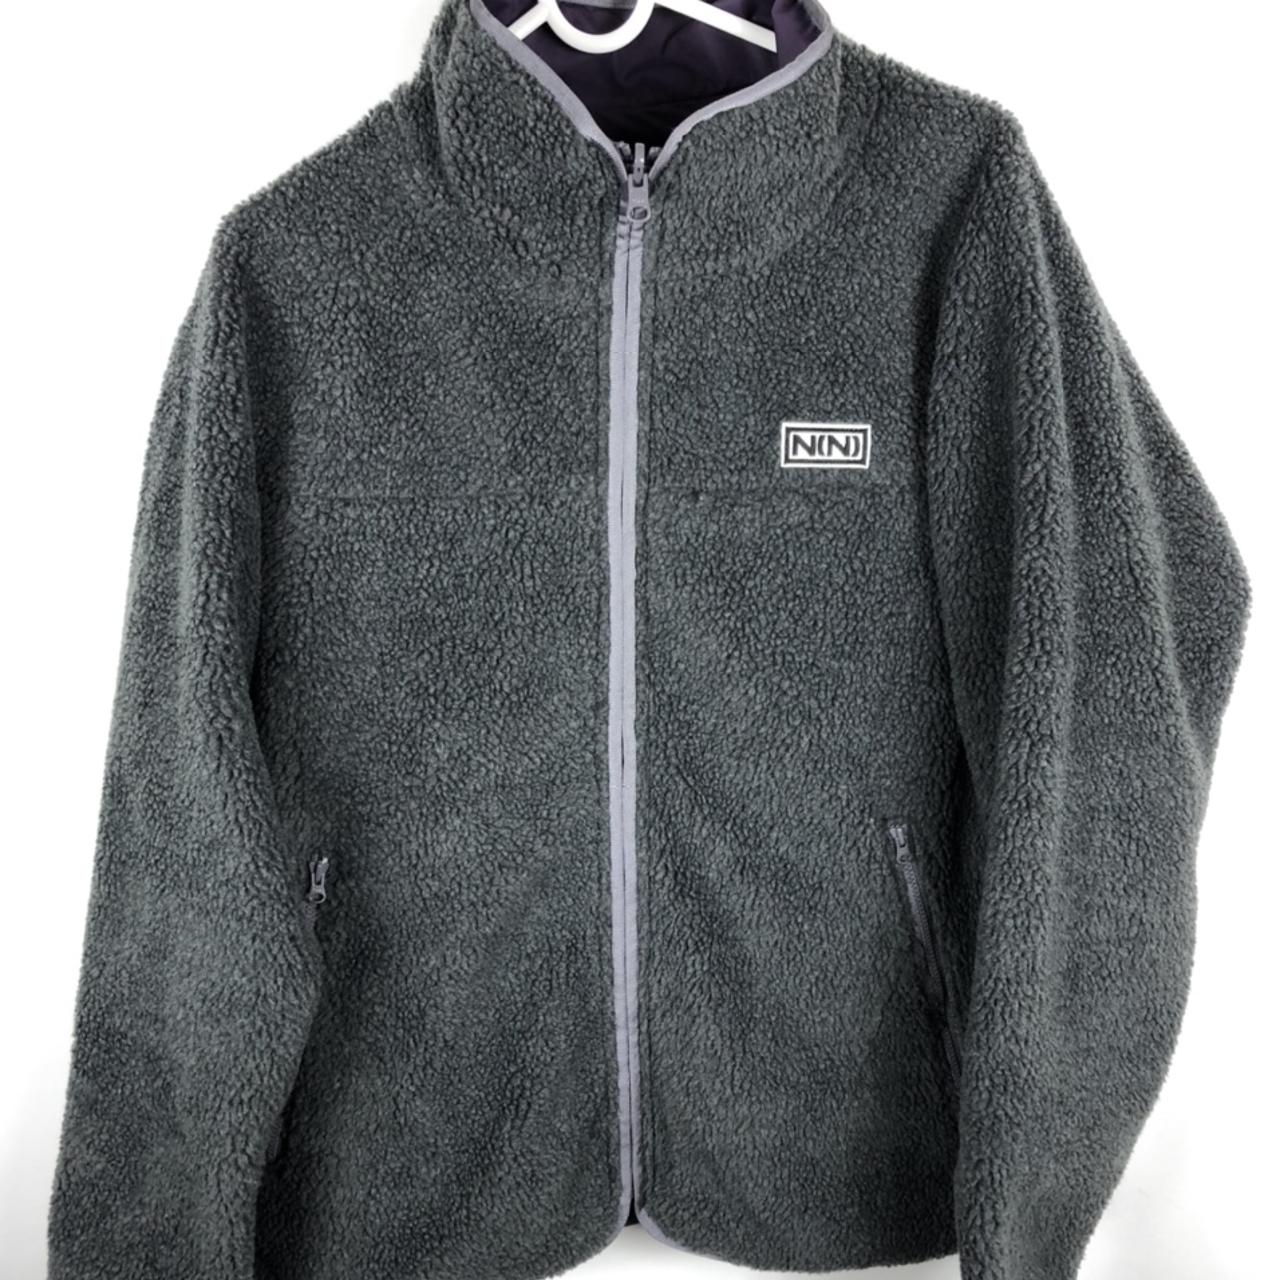 Number nine NN fur sweatshirt Reversable 18’ P2P... - Depop